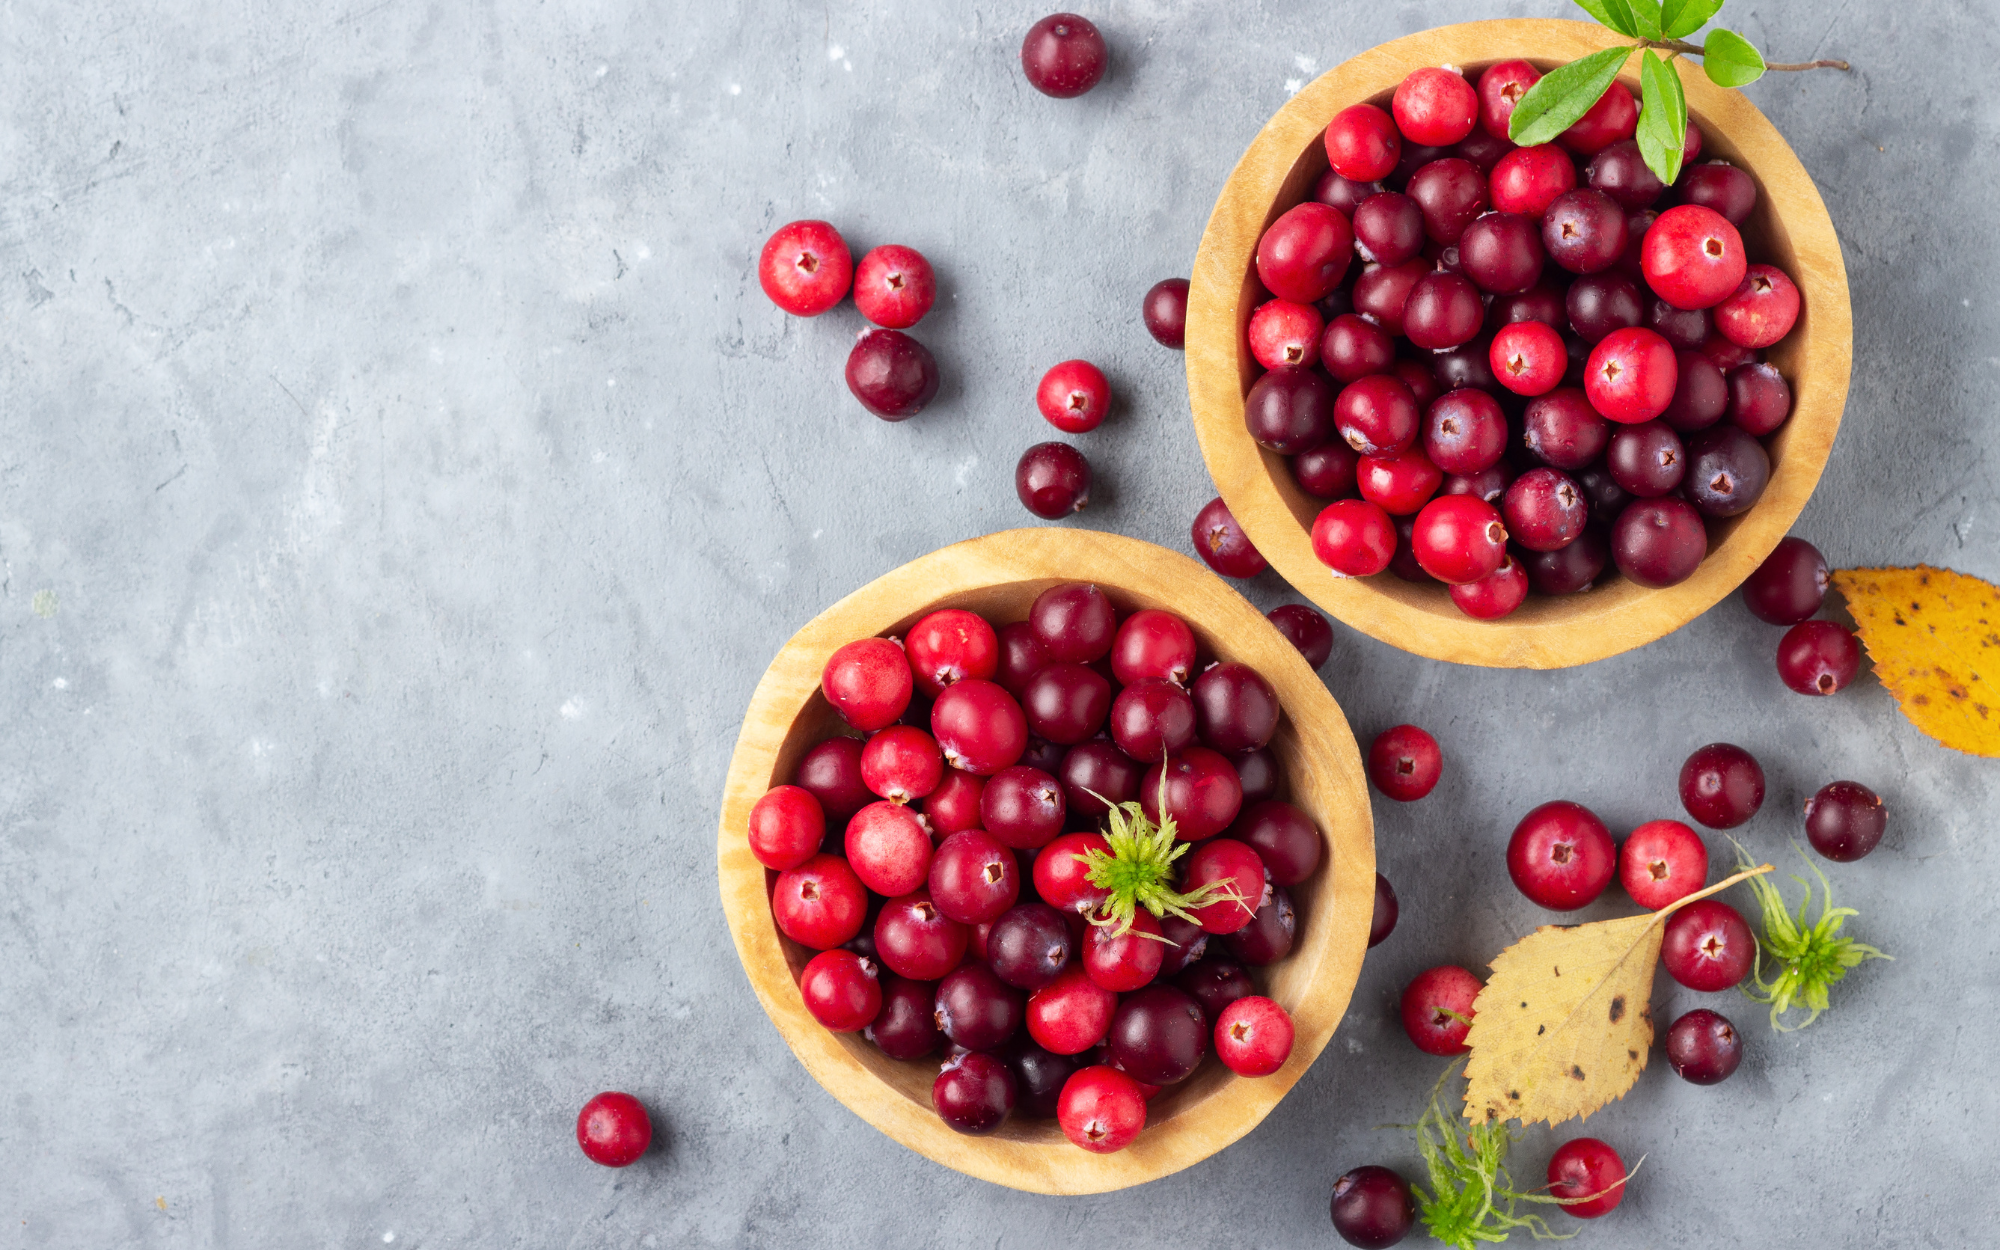 Health benefits of cranberries